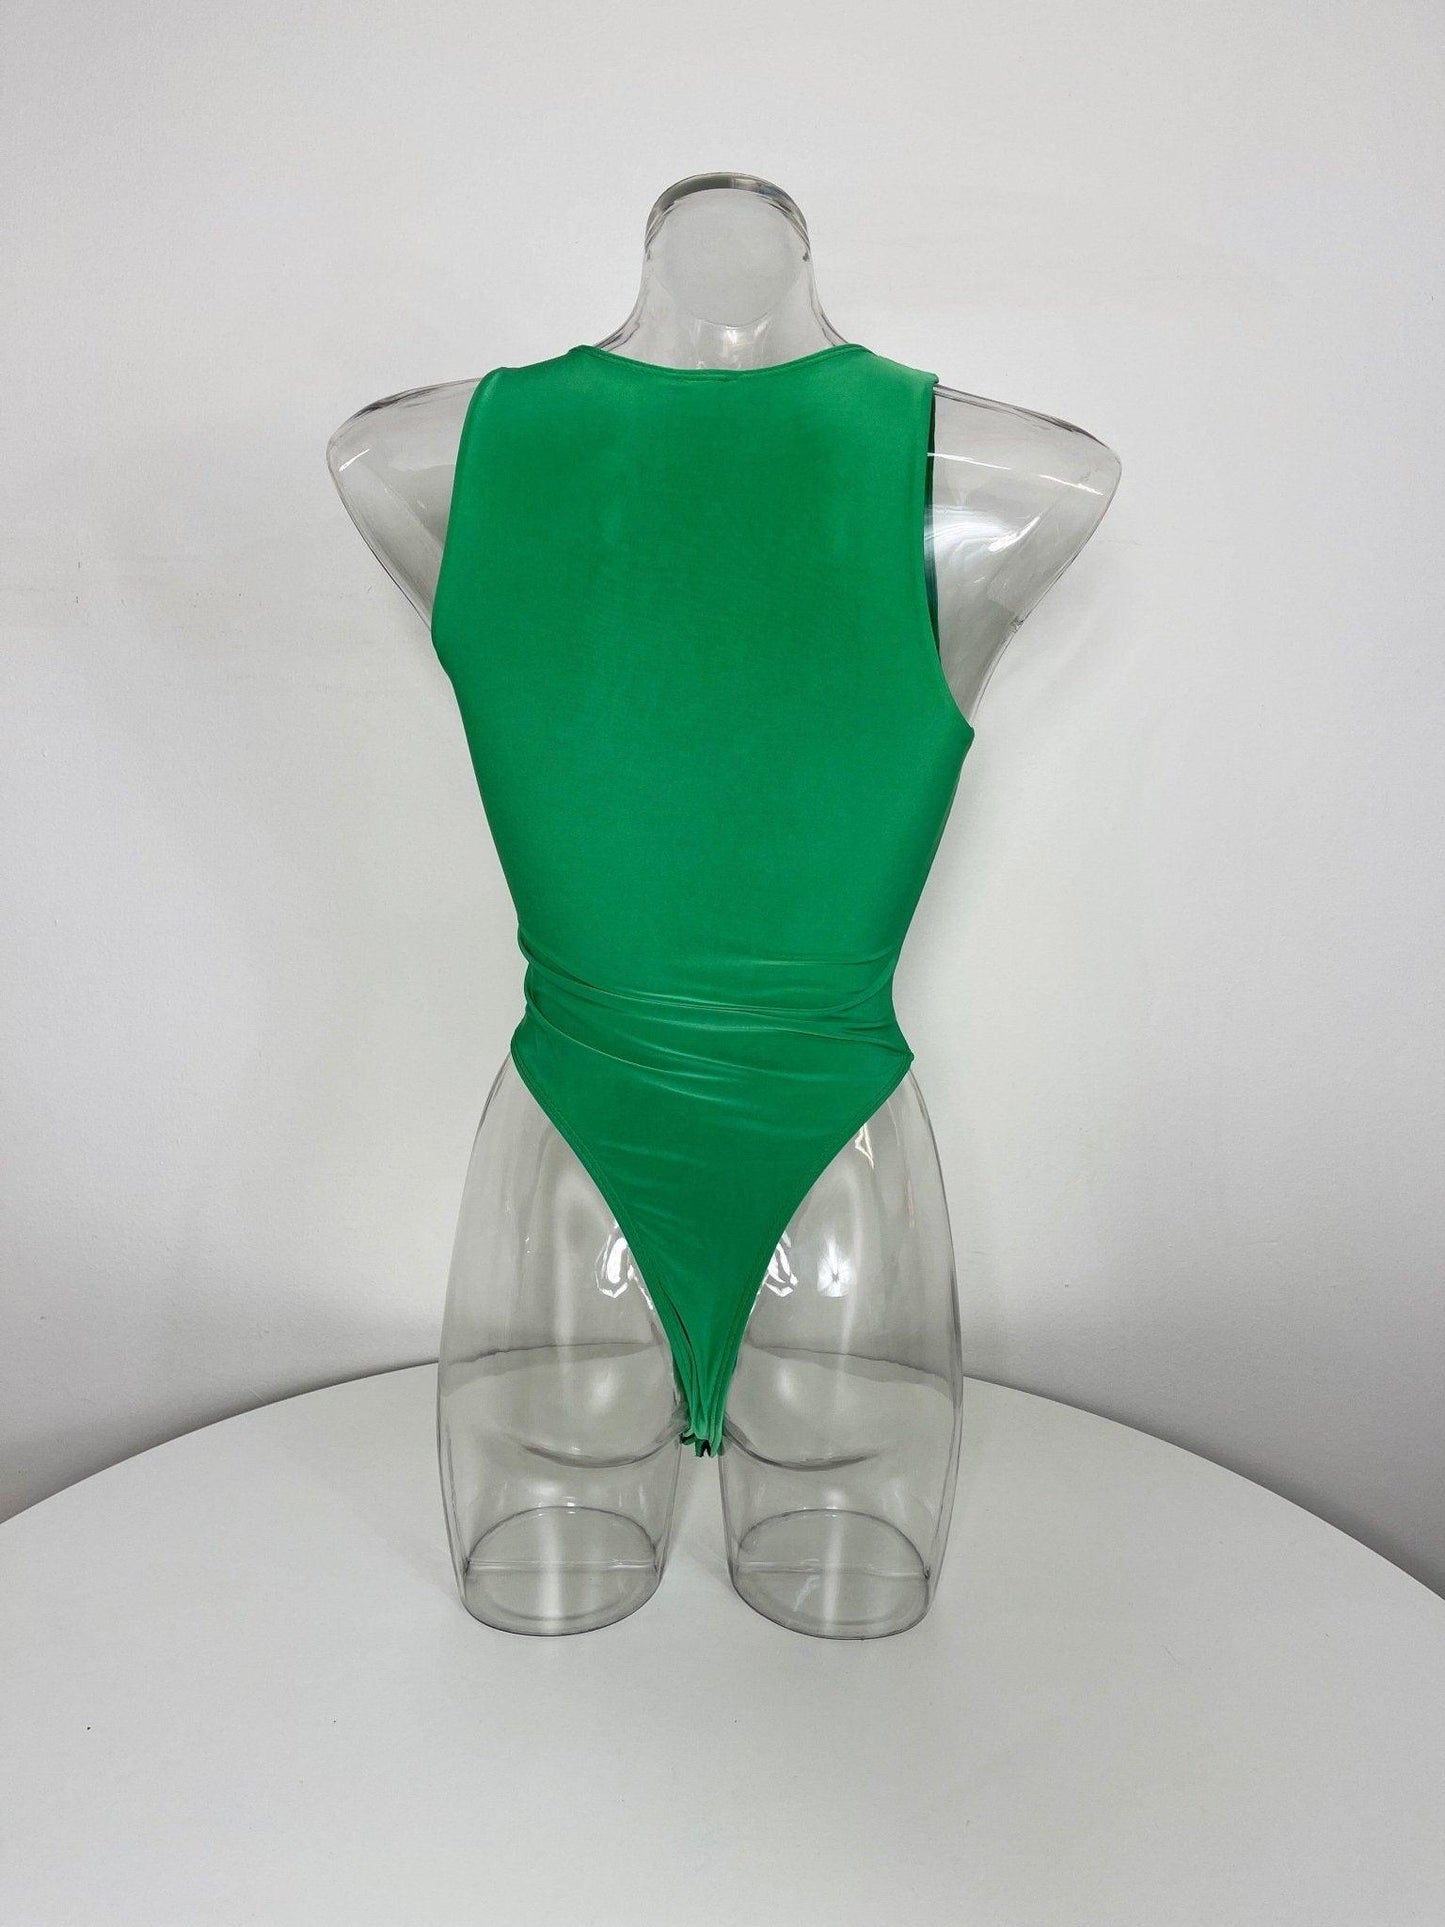 Bodysuit Crew Green, [product type]